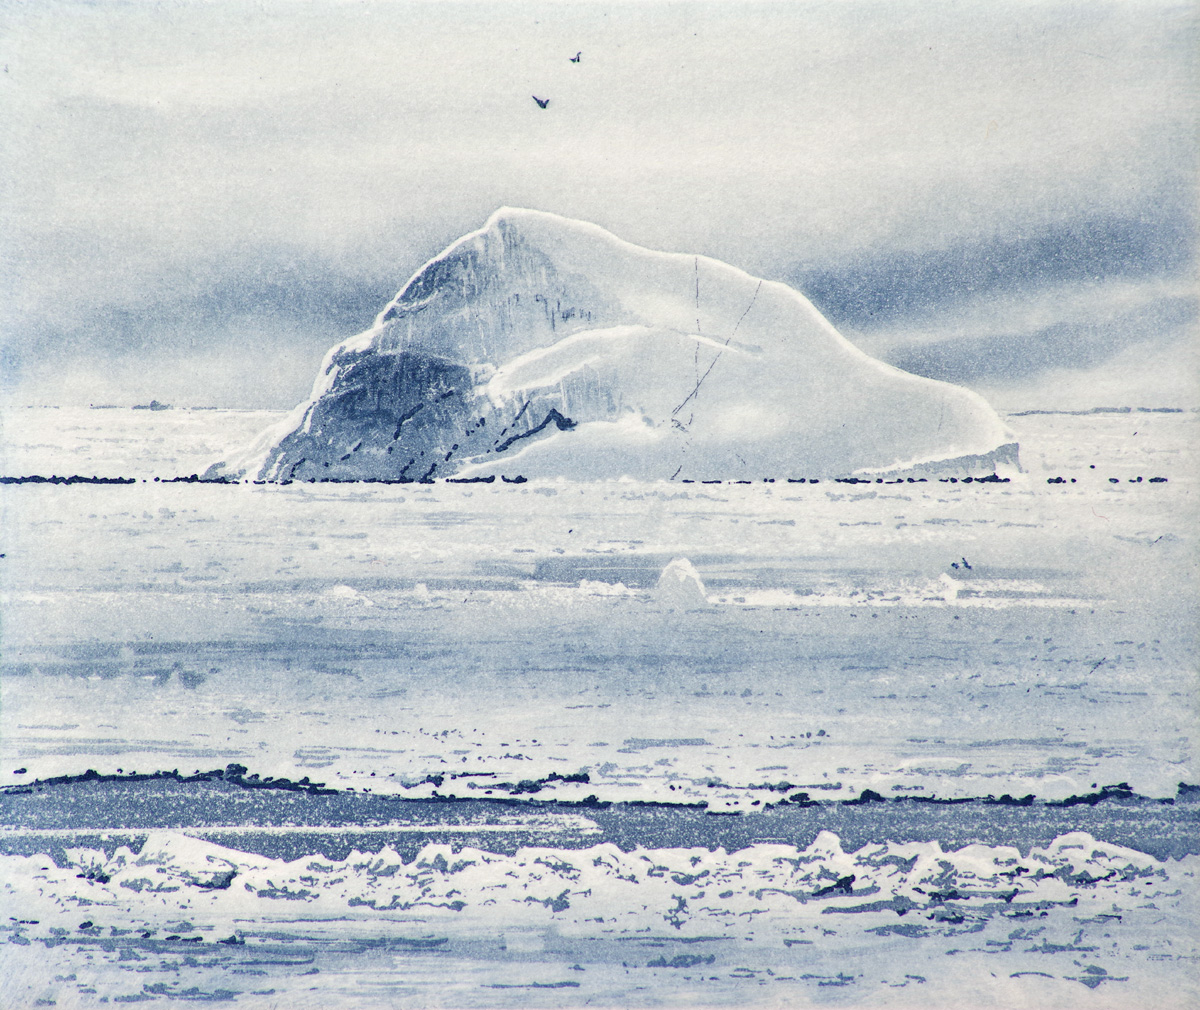 IanBrooks – 061 – Iceberg Kara Sea